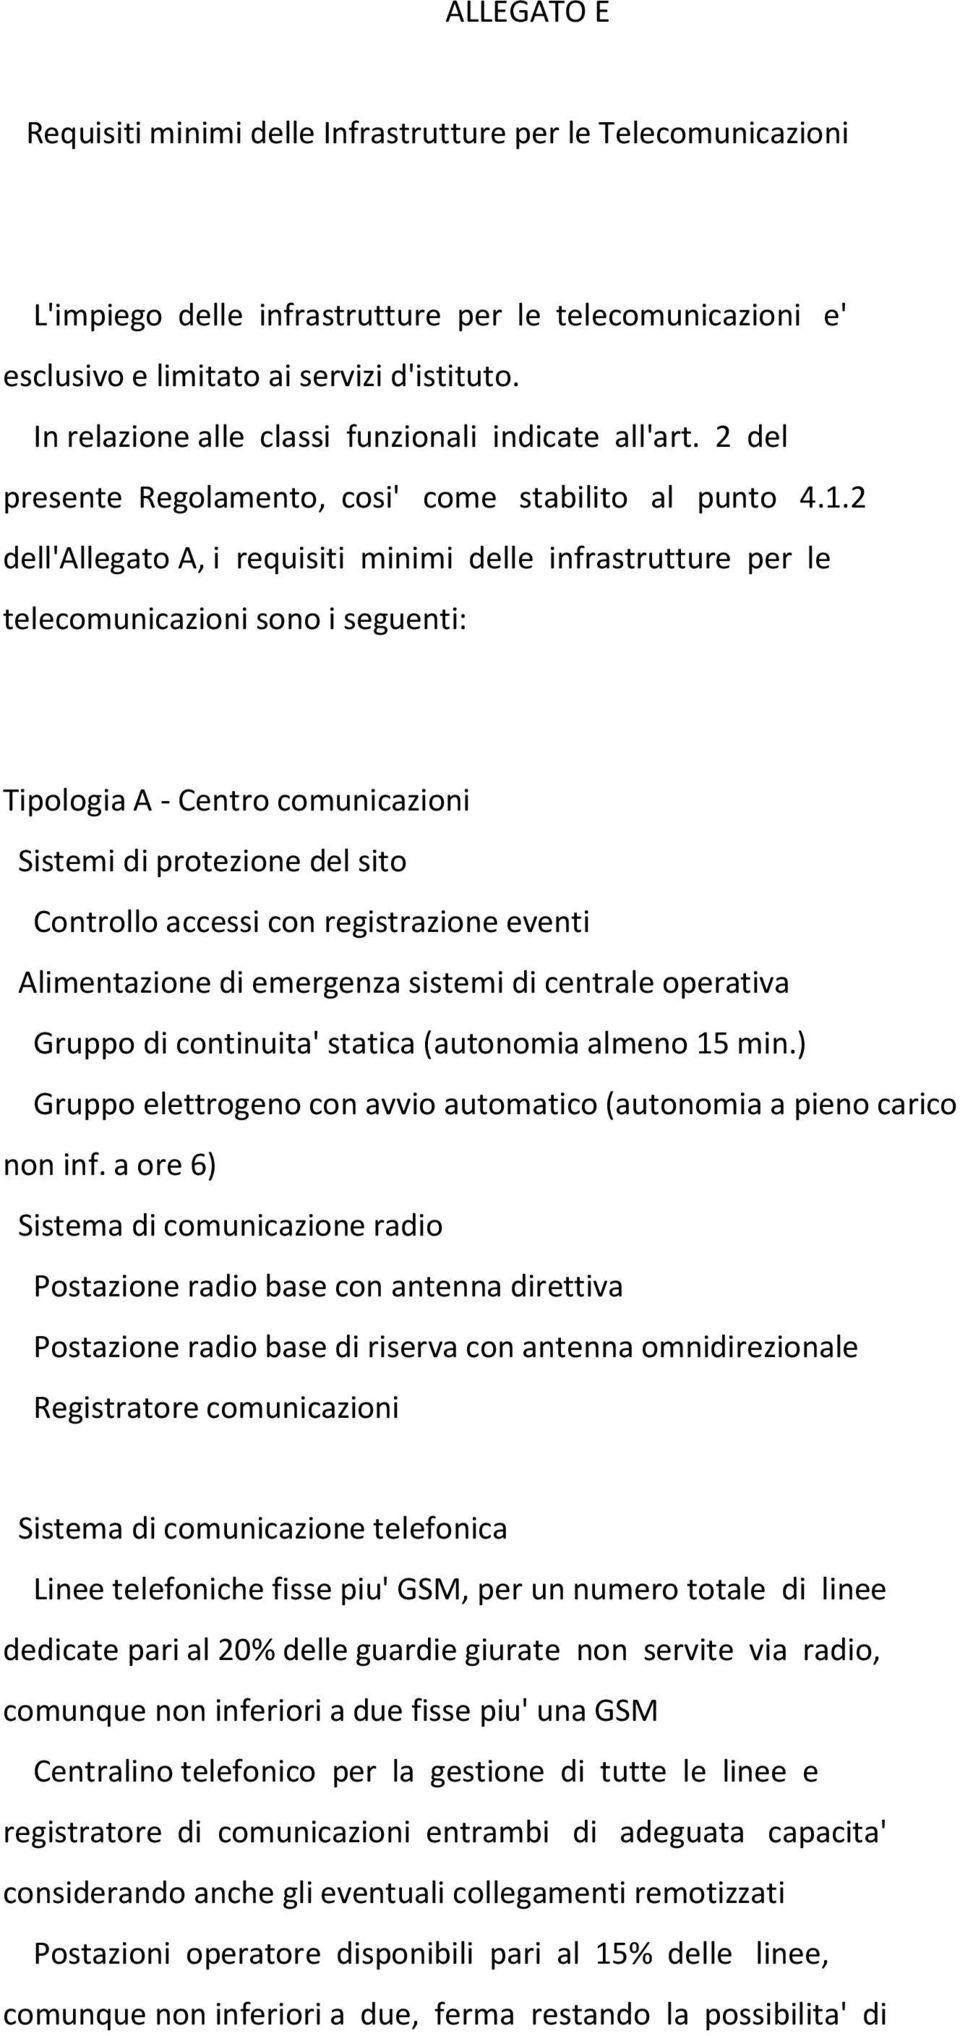 2 dell'allegato A, i requisiti minimi delle infrastrutture per le telecomunicazioni sono i seguenti: Tipologia A - Centro comunicazioni Sistemi di protezione del sito Controllo accessi con